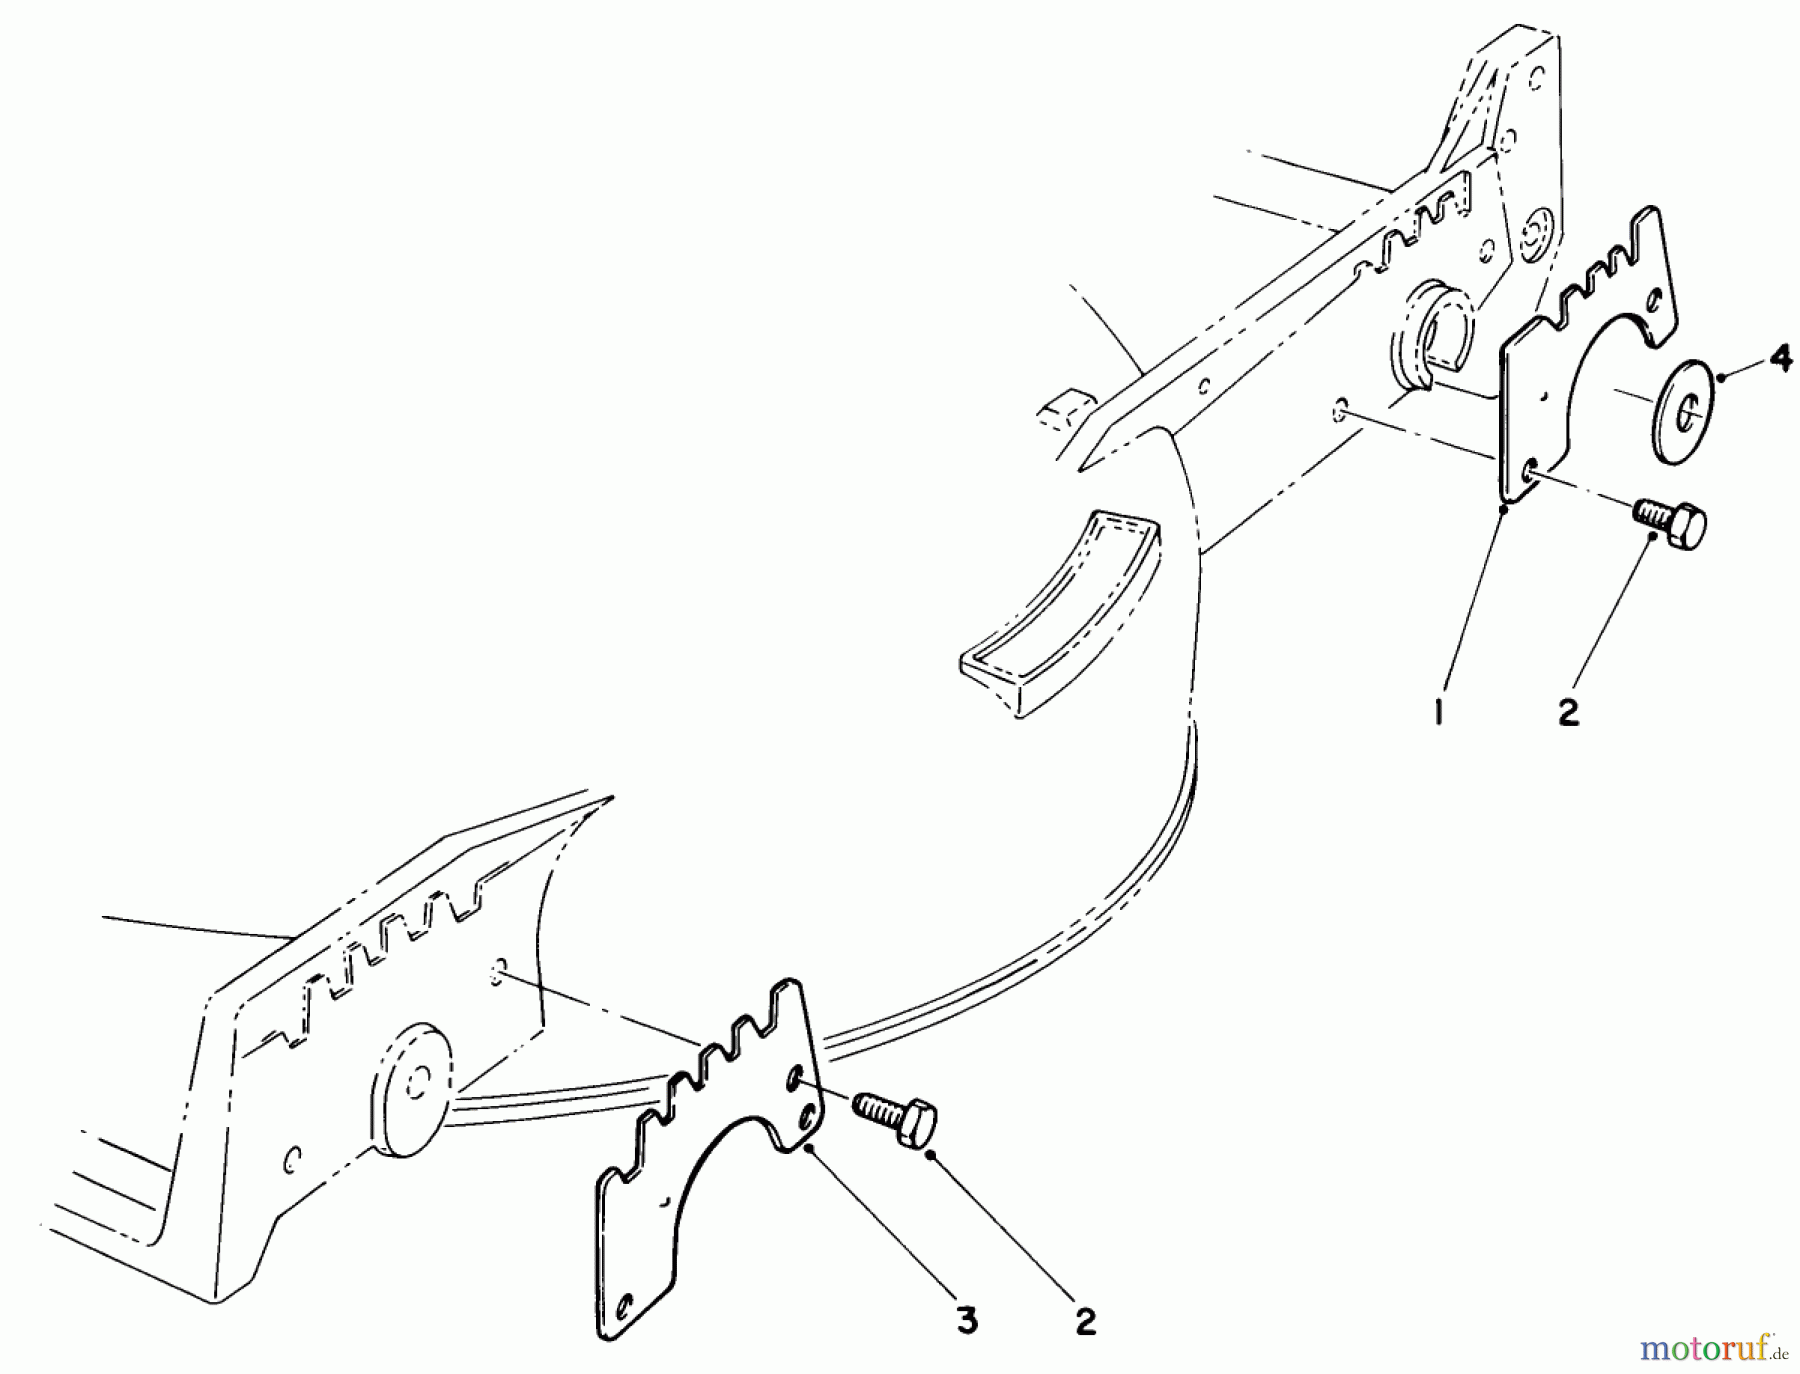  Toro Neu Mowers, Walk-Behind Seite 1 20584 - Toro Lawnmower, 1986 (6000001-6999999) WEAR PLATE KIT NO. 49-4080 (OPTIONAL)